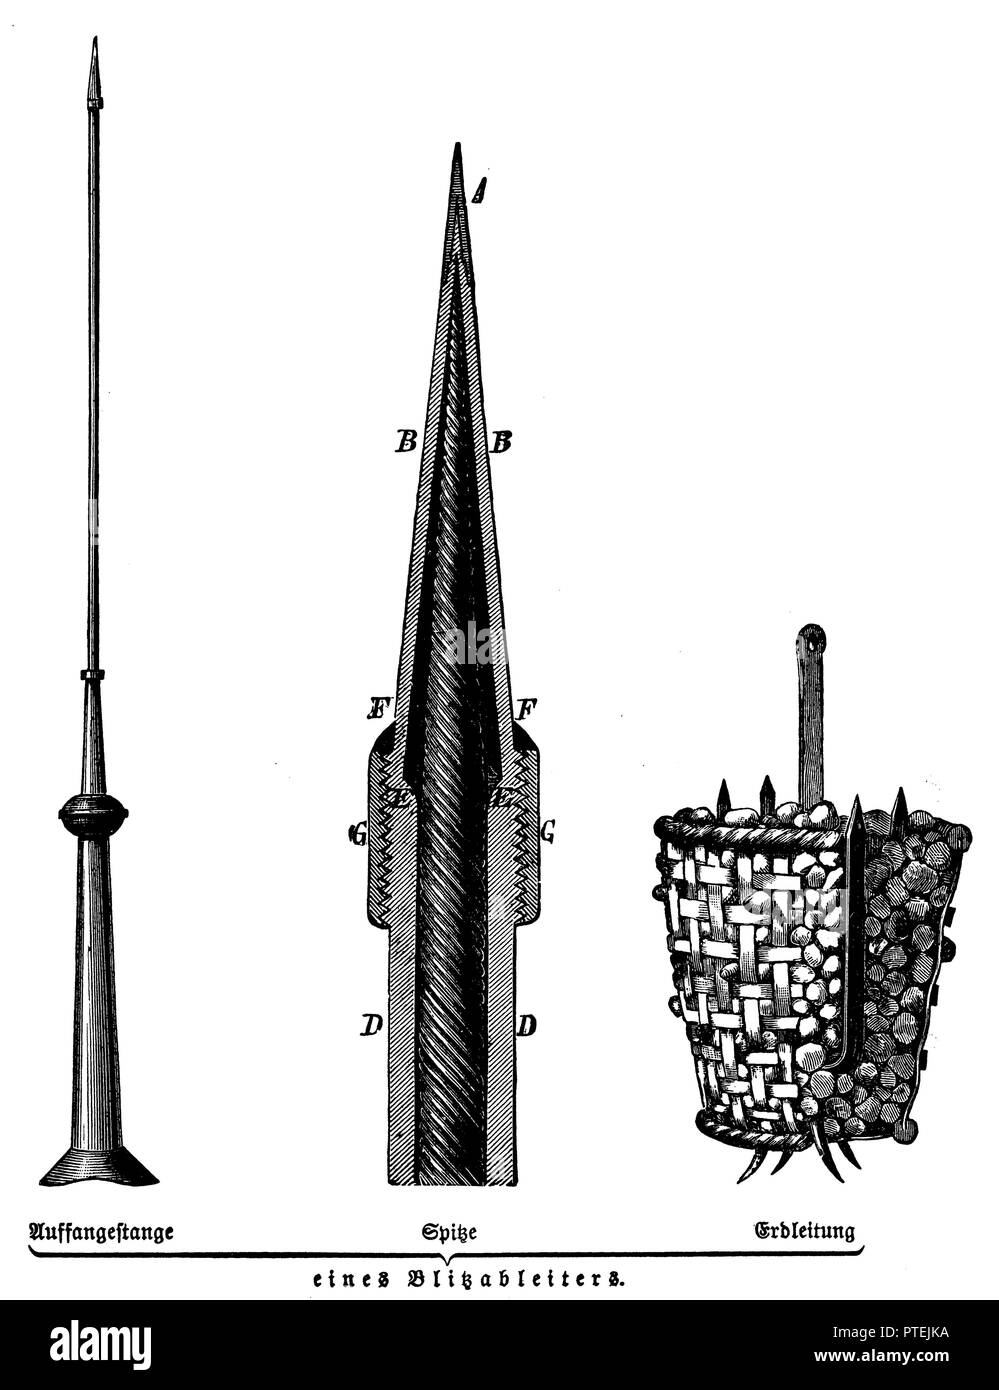 Lanyard Der Blitzstromableiter (links), Spitze eines Blitzschutz (Mitte), die Masse eines Blitzschutz (rechts), 1900 Stockfoto